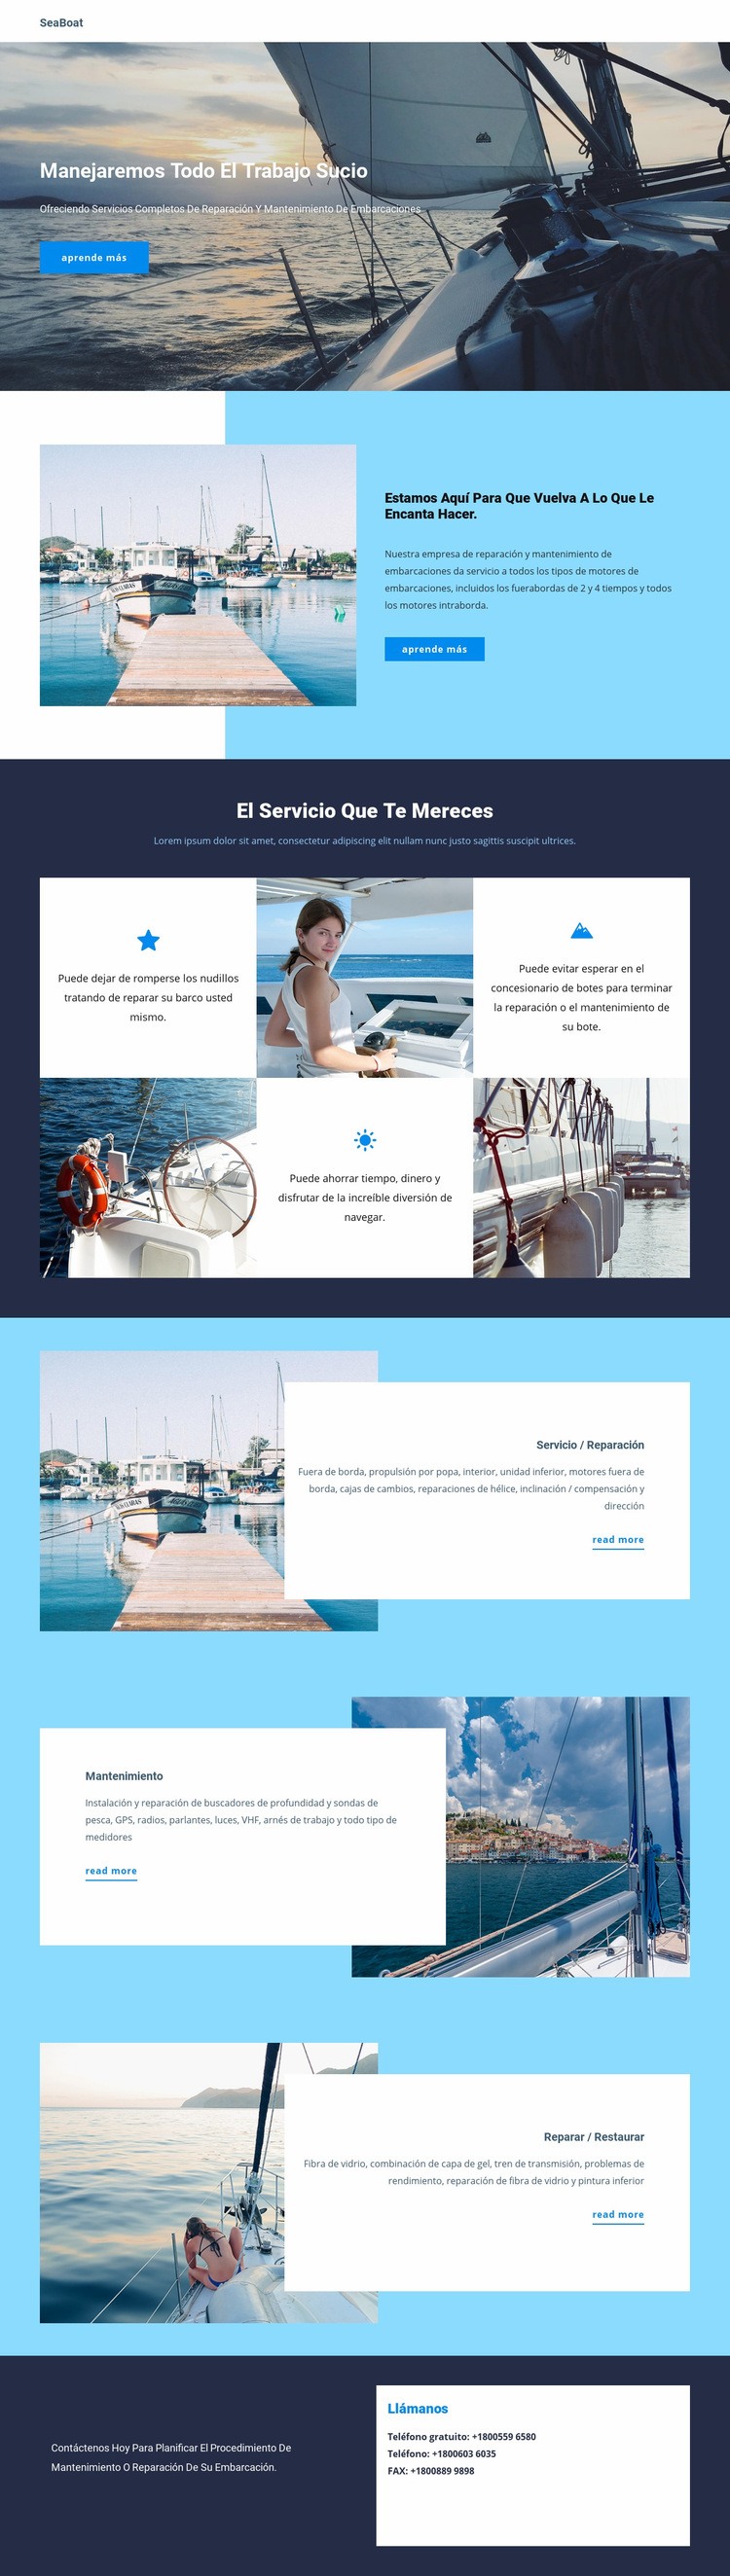 Viajar en Seaboat Plantilla HTML5